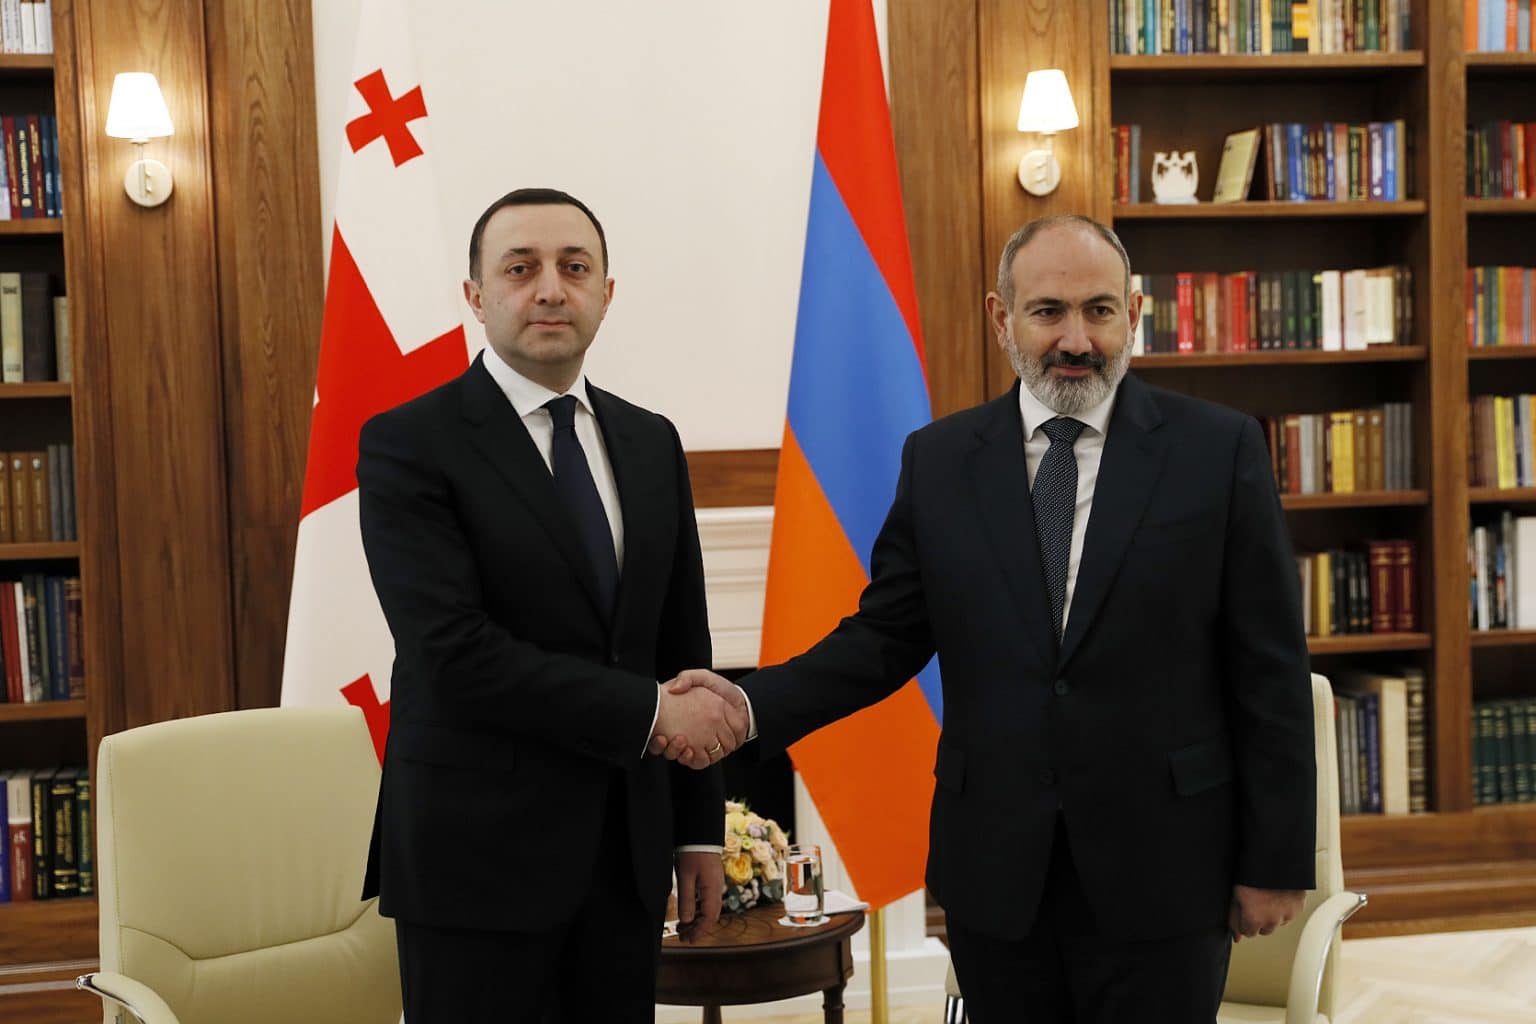 Հայաստանի և Վրաստանի ղեկավարները համաձայնագիր ստորագրեցին. ինչ փոփոխություններ են սպասվում